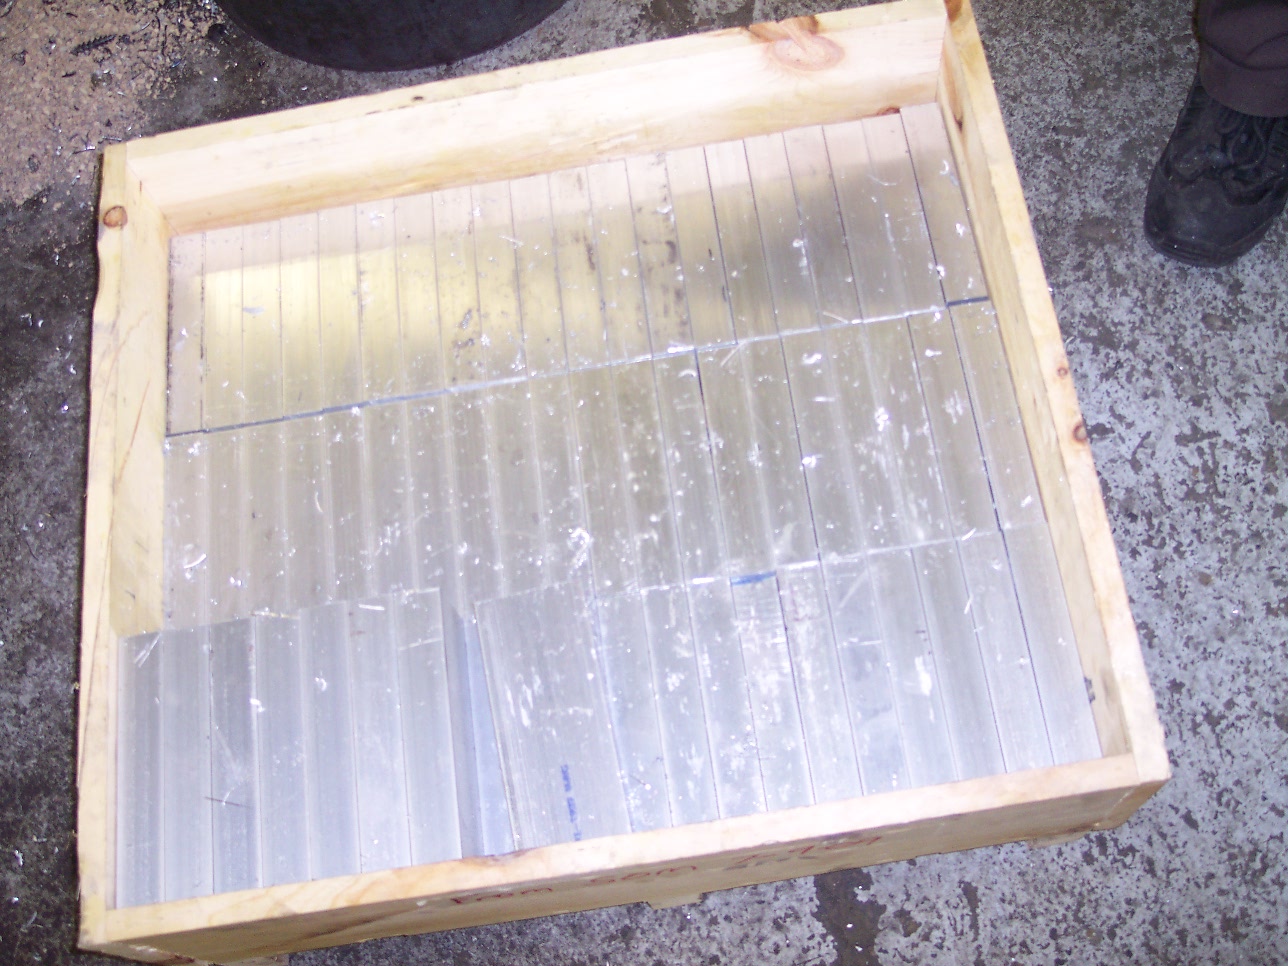 Crate of solid Aluminum 6061 T-6 Billet Bars 